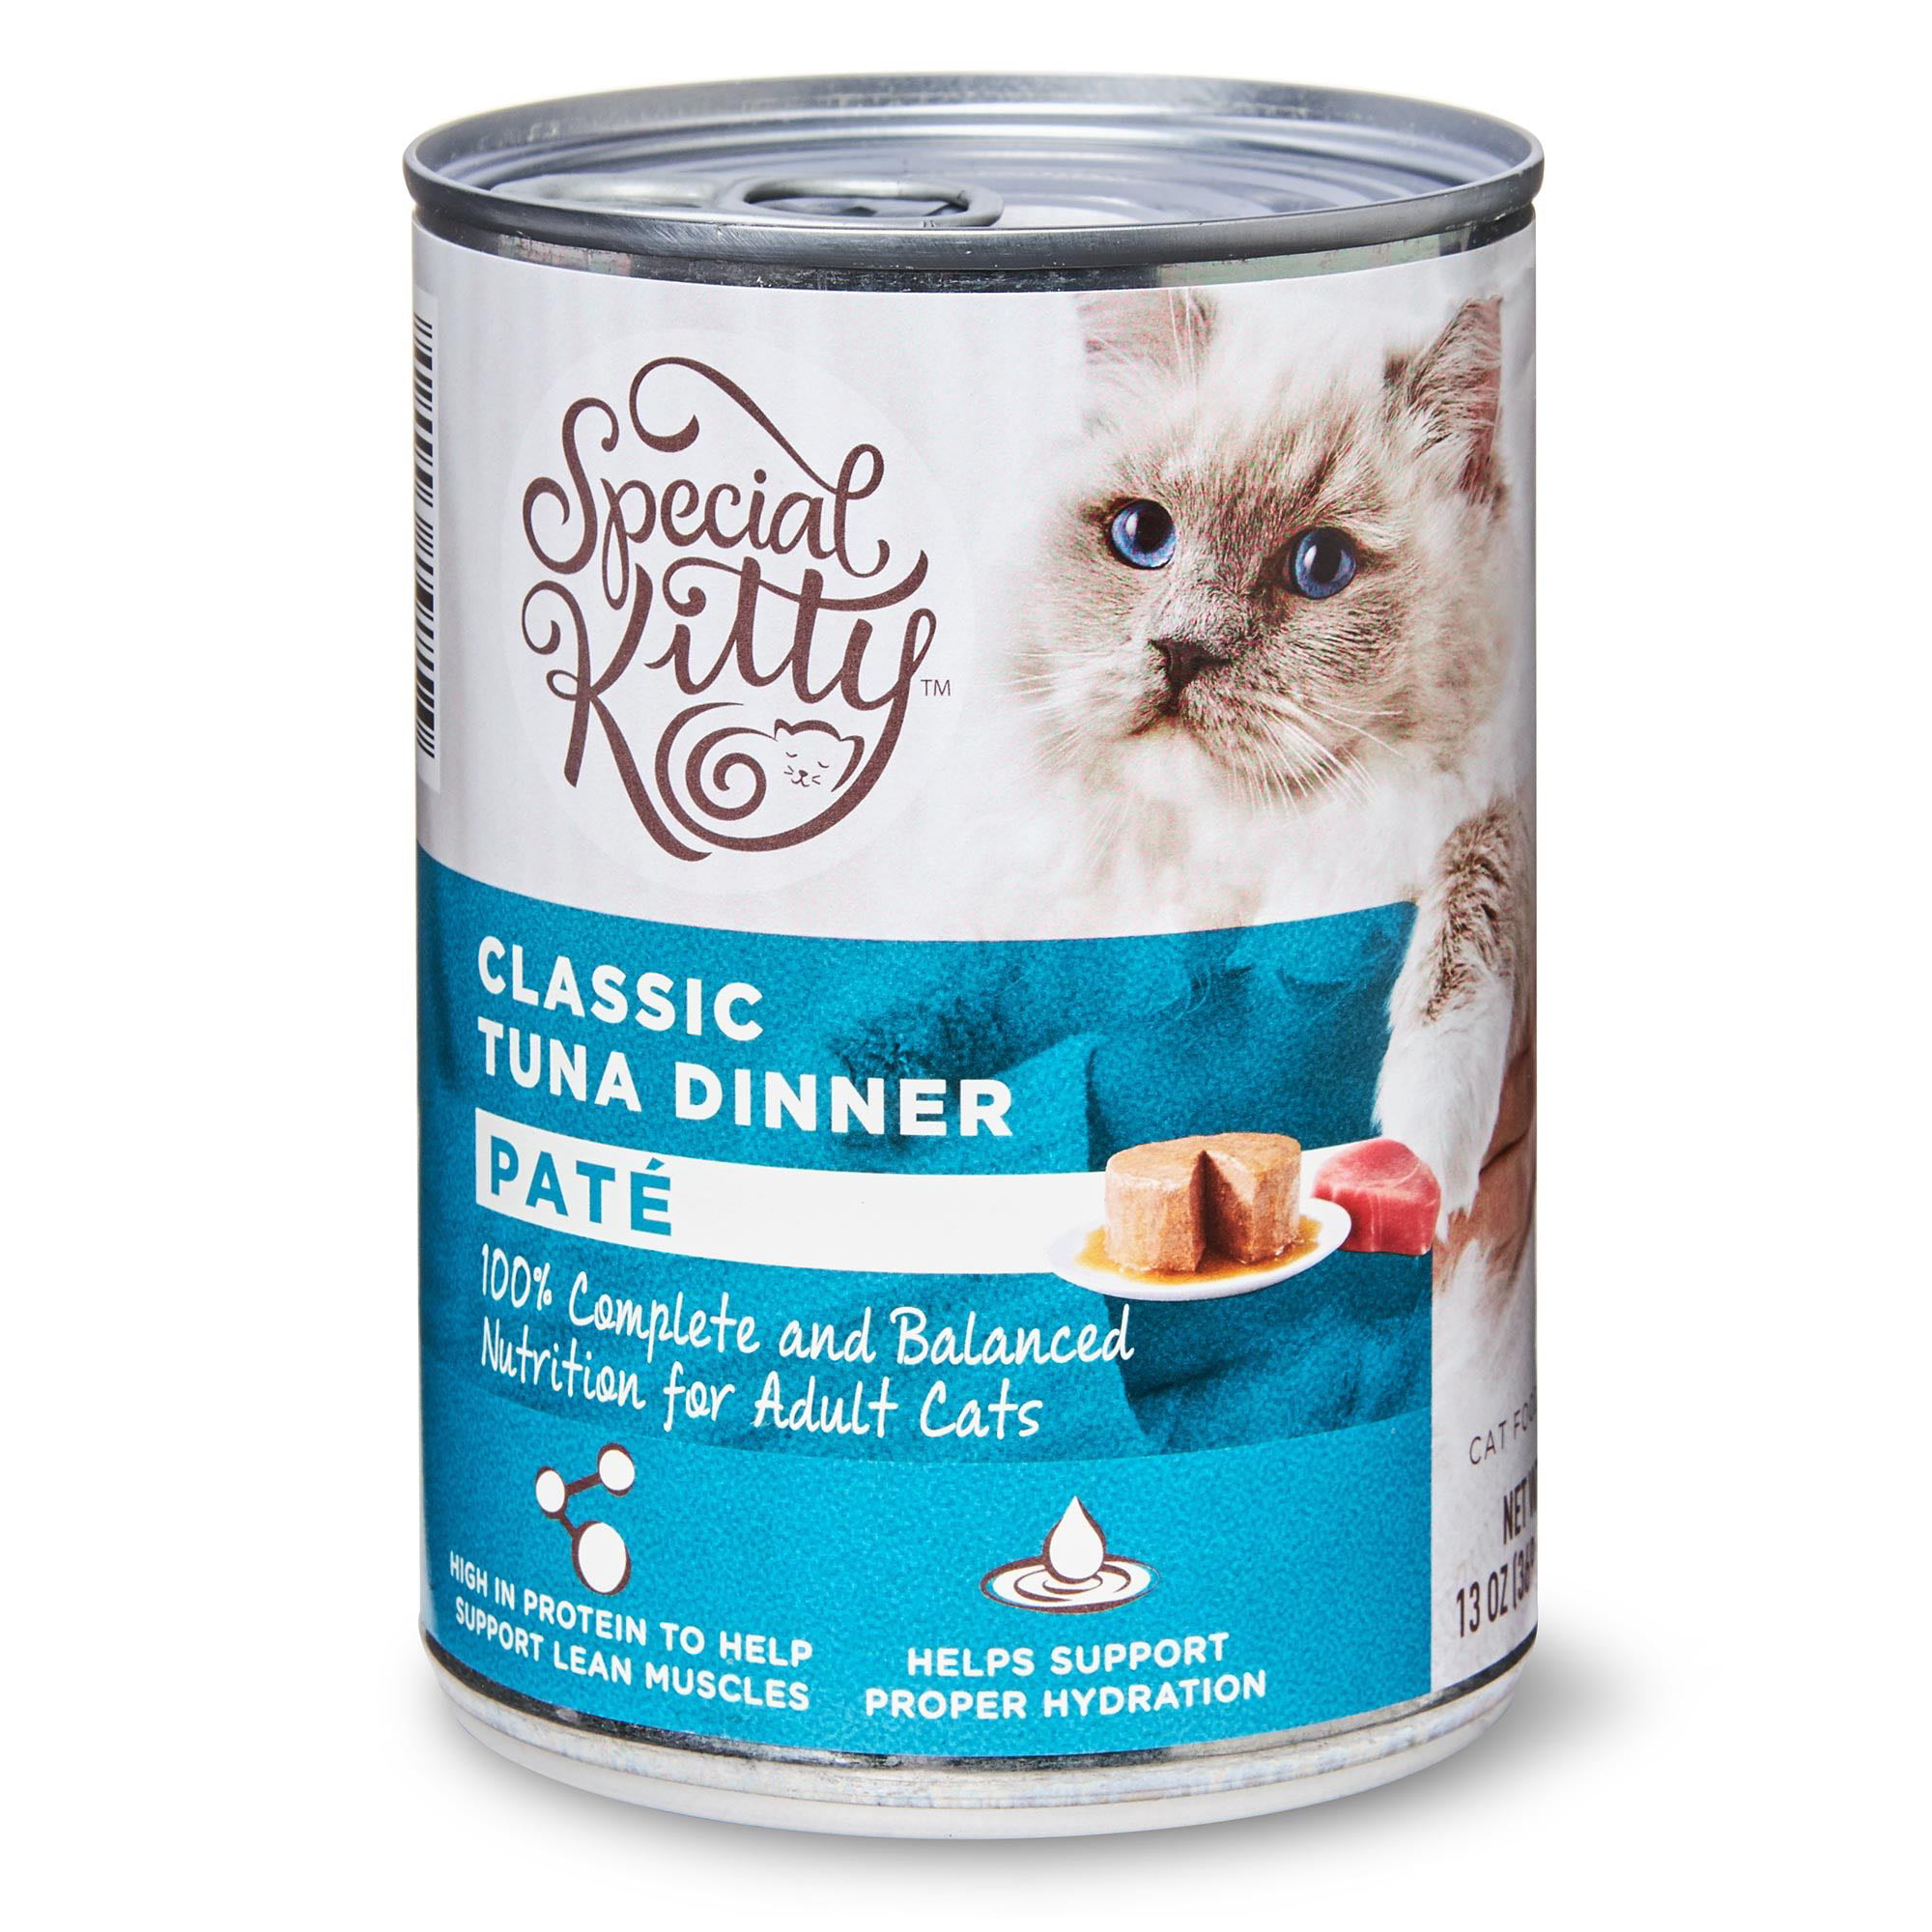 Special Kitty Classic Tuna Dinner Pate Wet Cat Food, 13 oz Walmart